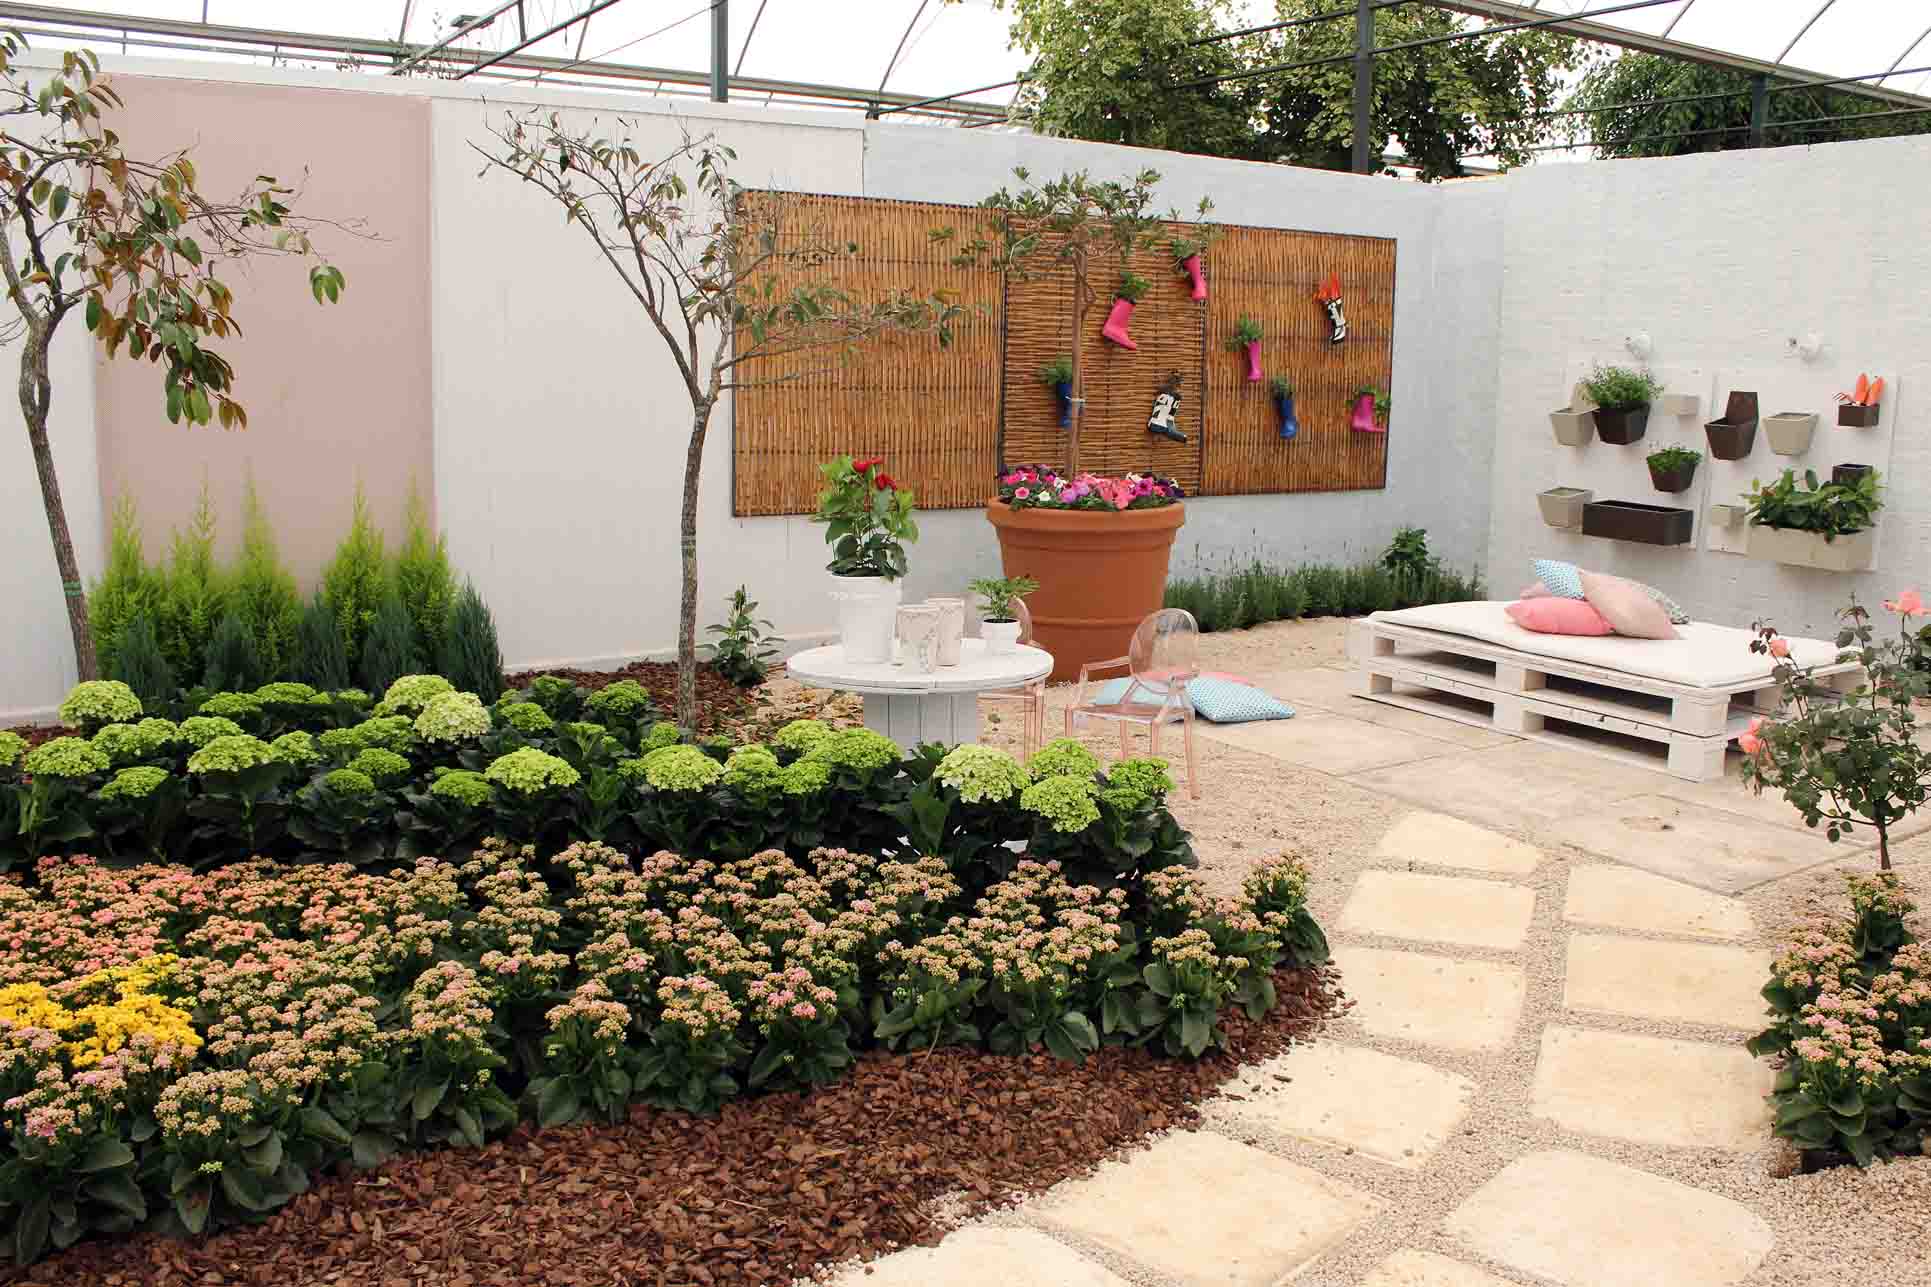 Jardim decorado com materiais recicláveis e pallets.